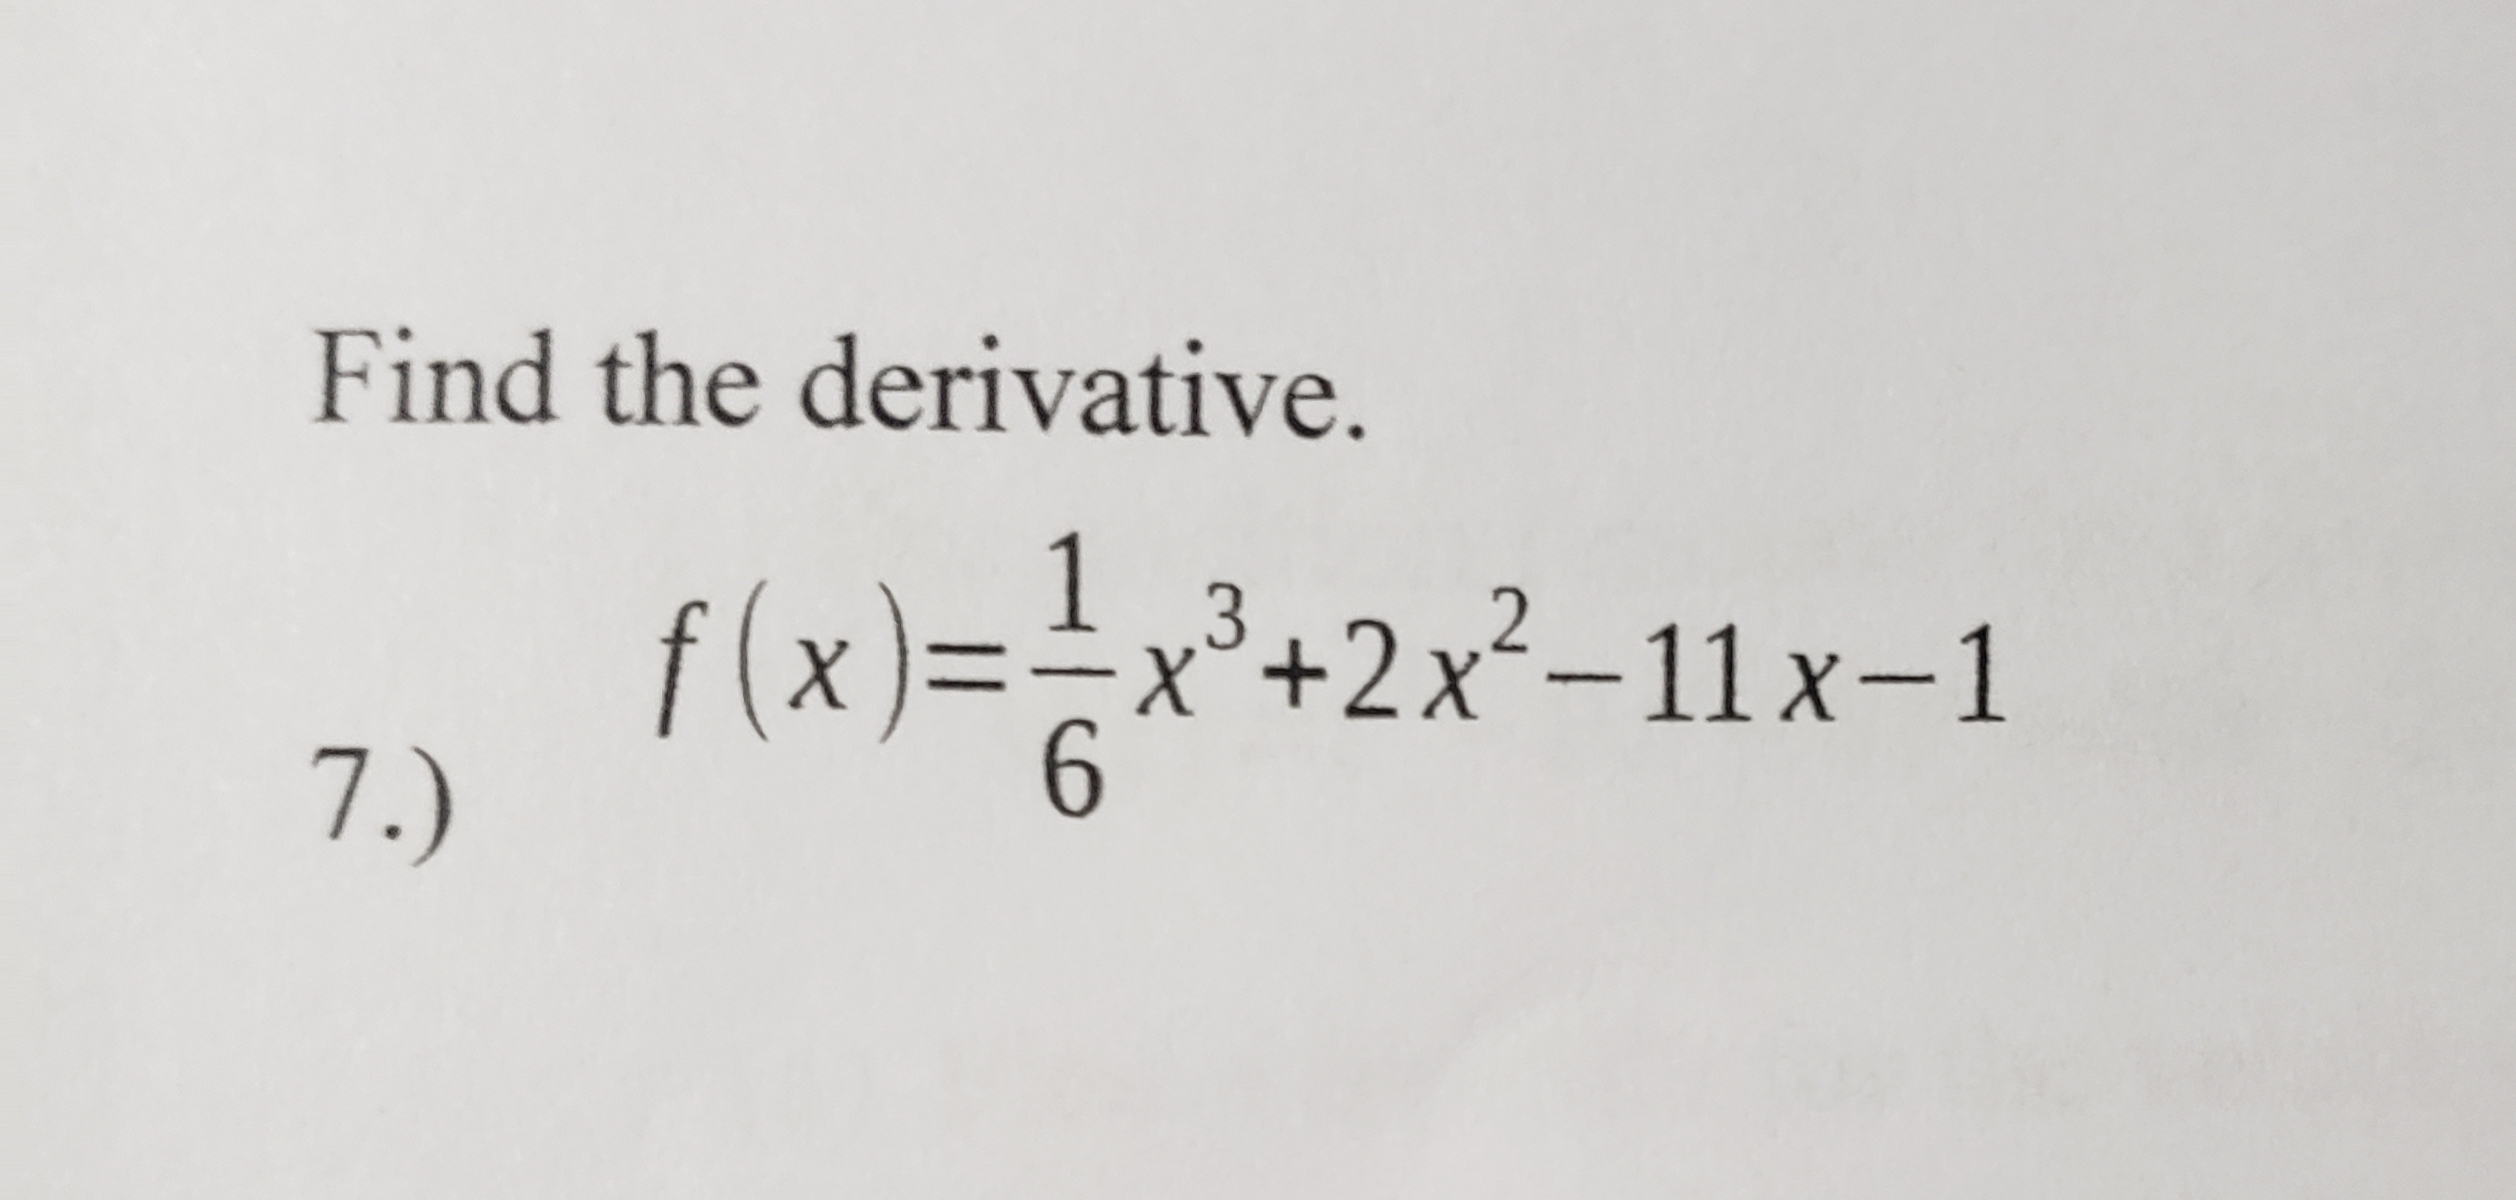 Find the derivative.
f (x)
7.)
f(x)==x³+2x²–11 x–1
+2x²-11 x-1
6.
